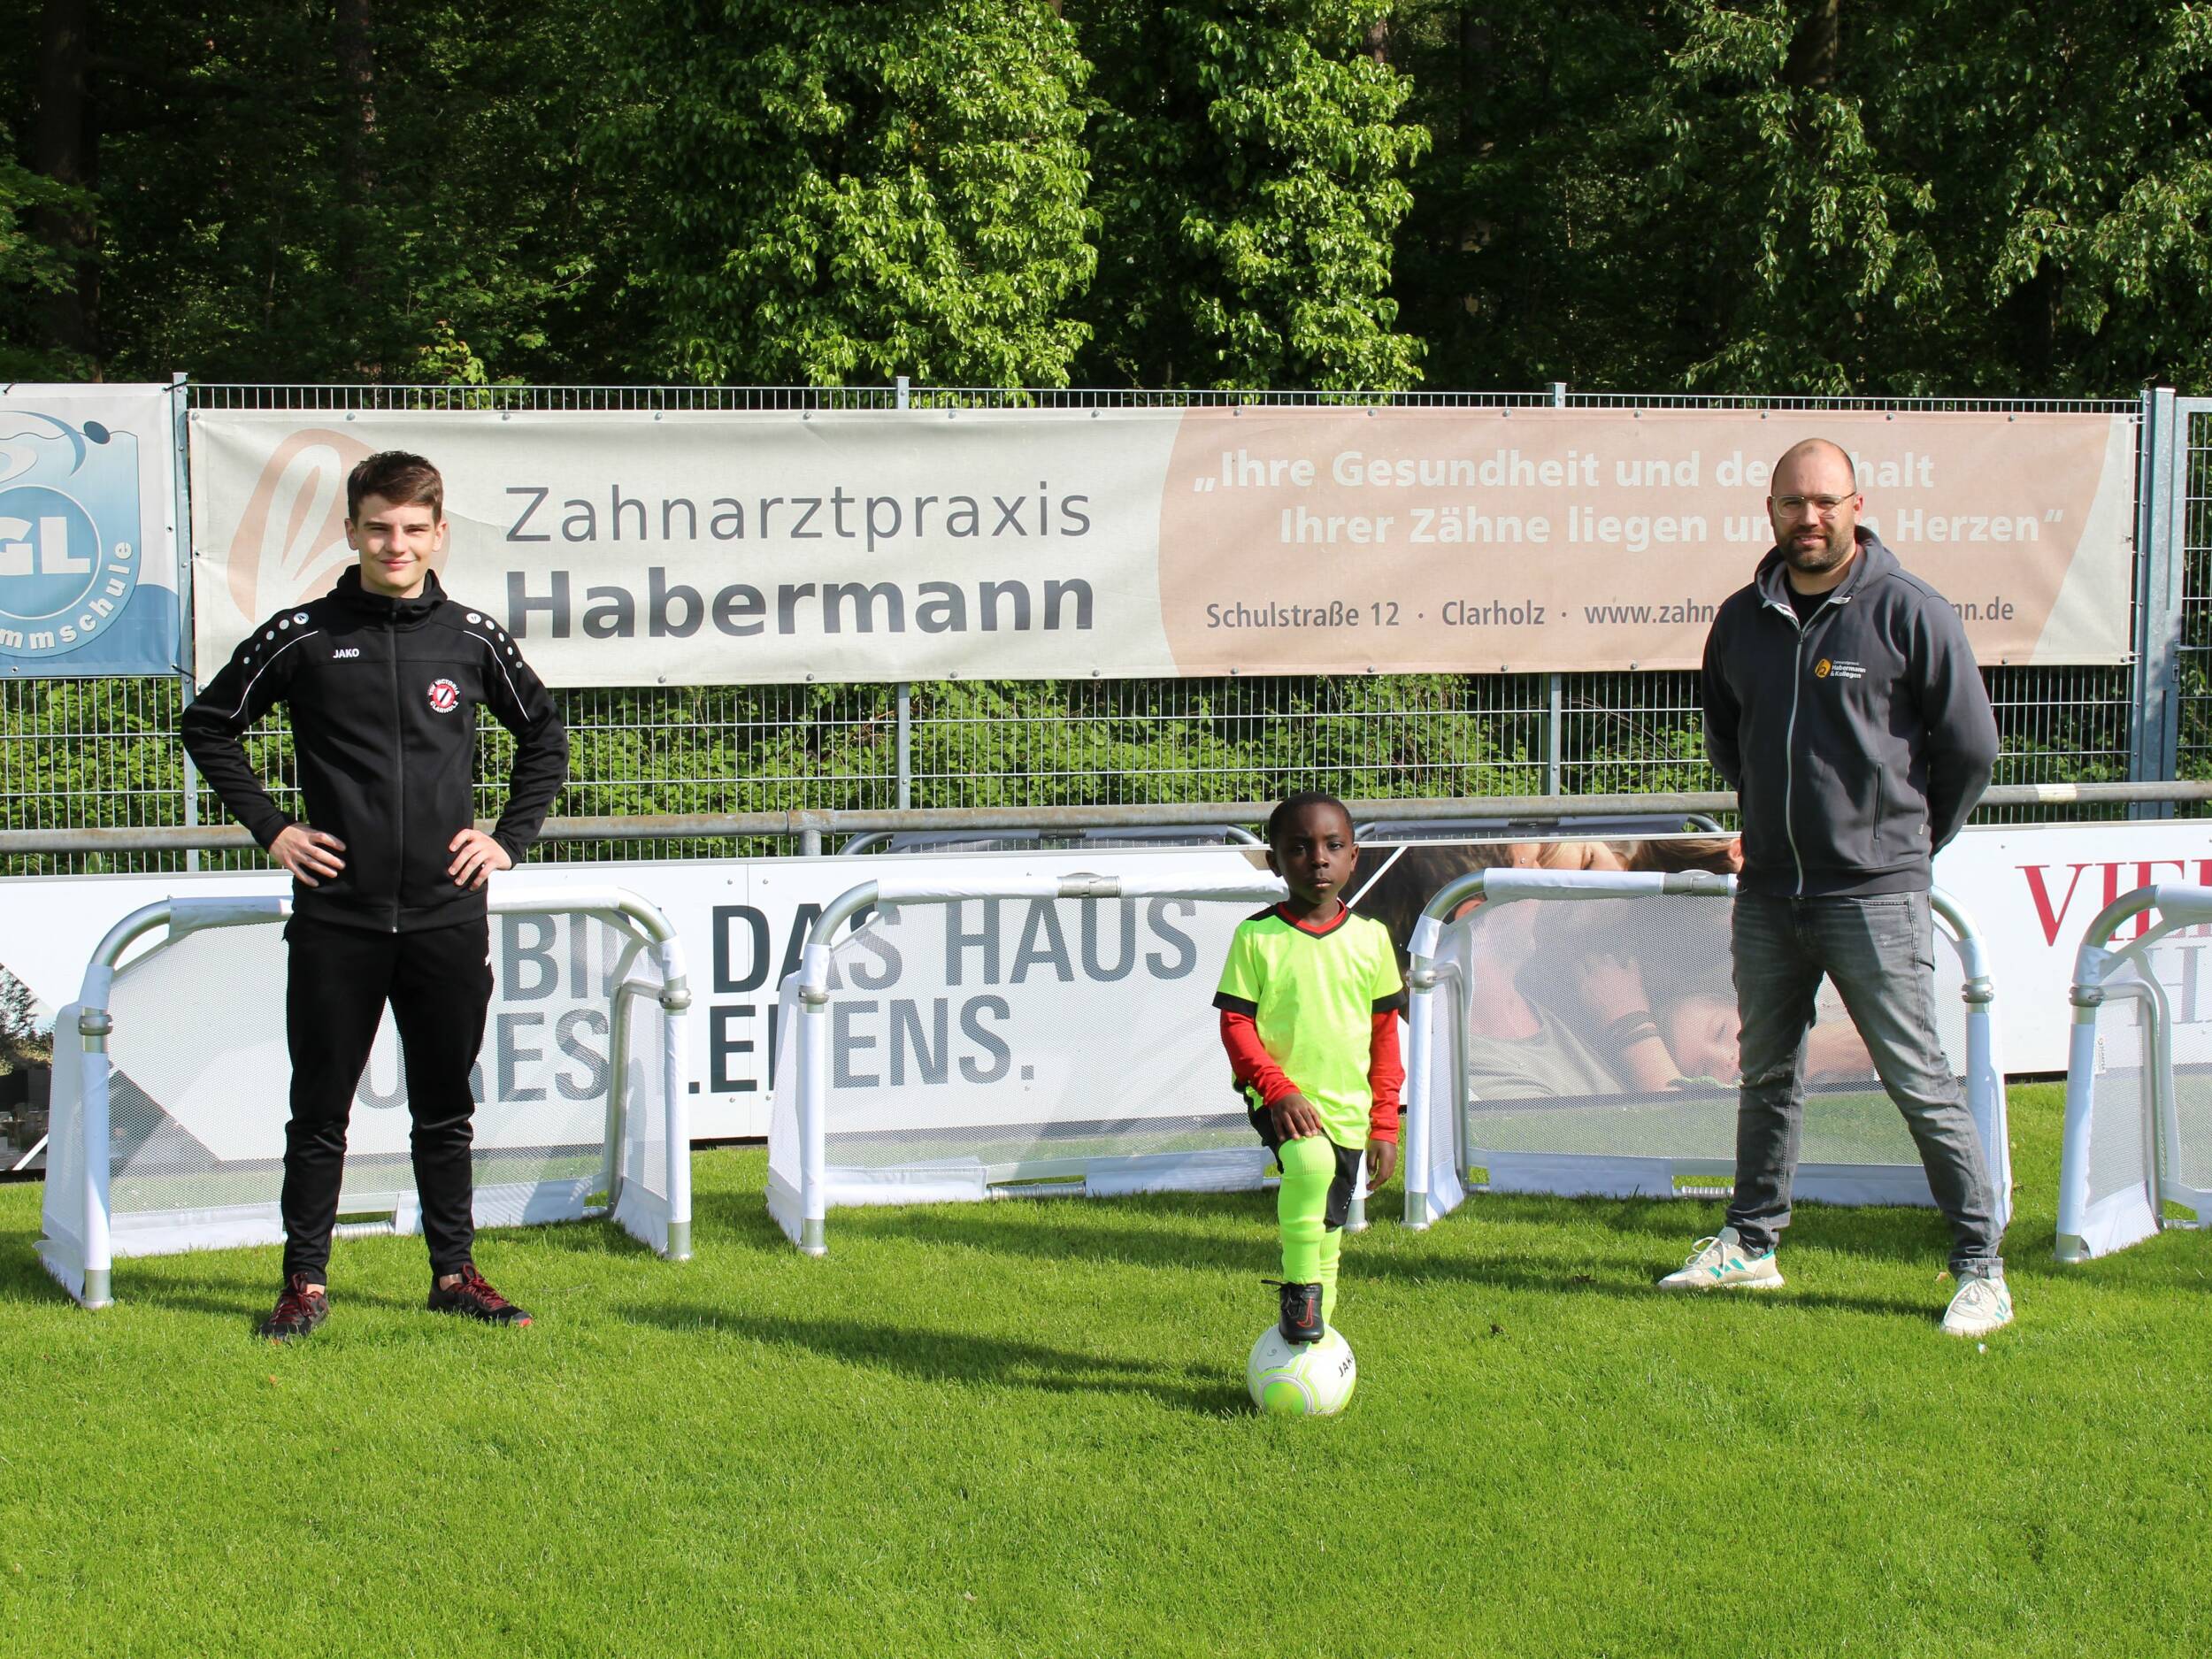 Fußball<br>Clarholzer Fußballabteilung dankt der Zahnarztpraxis Habermann